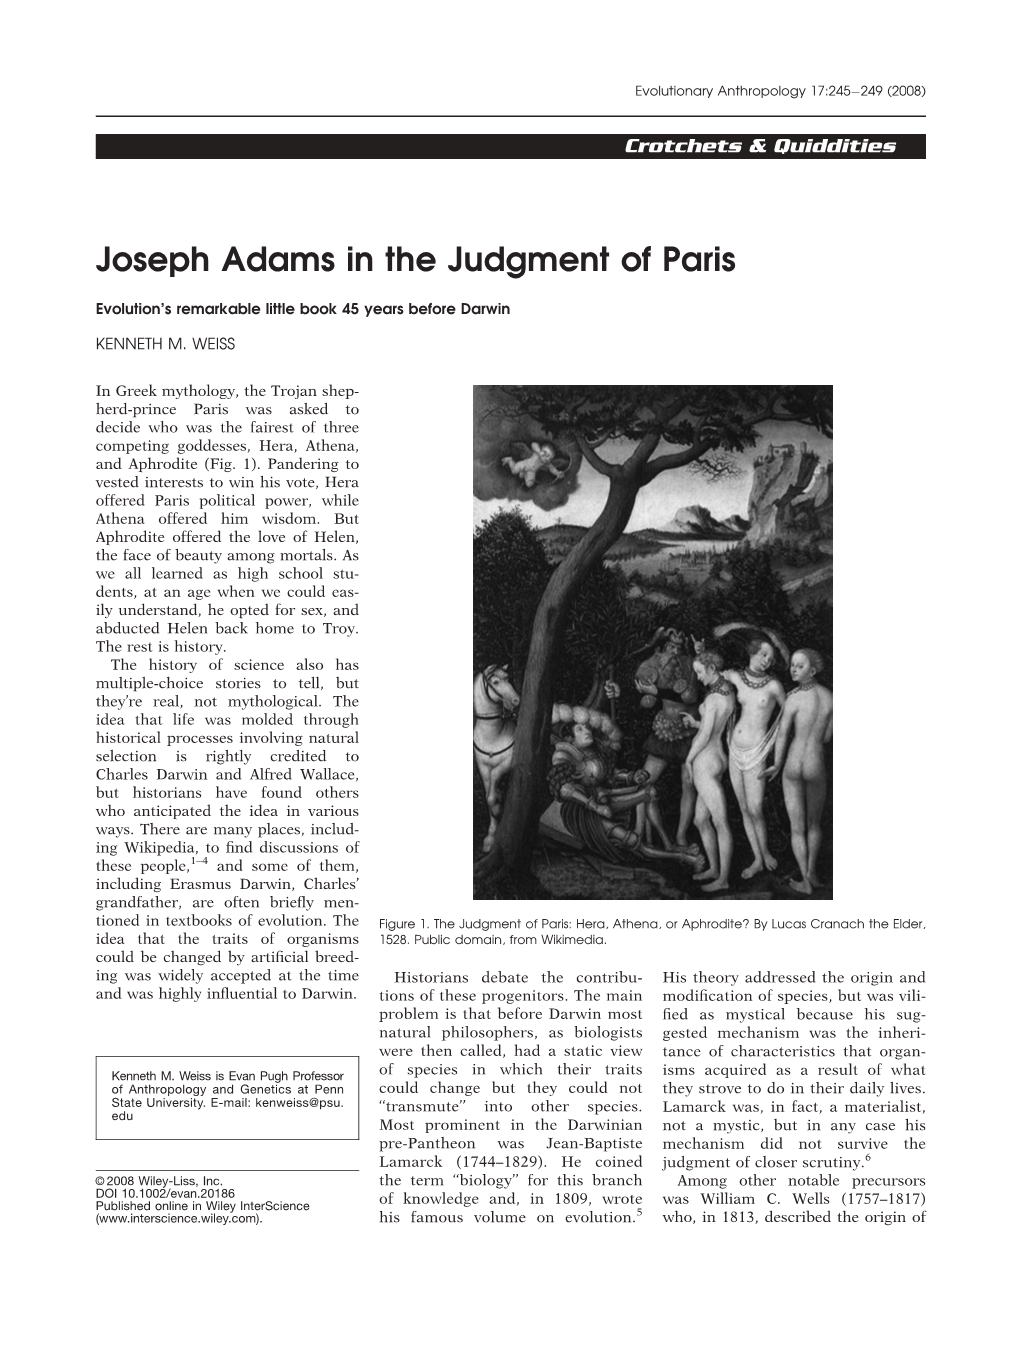 Joseph Adams in the Judgment of Paris